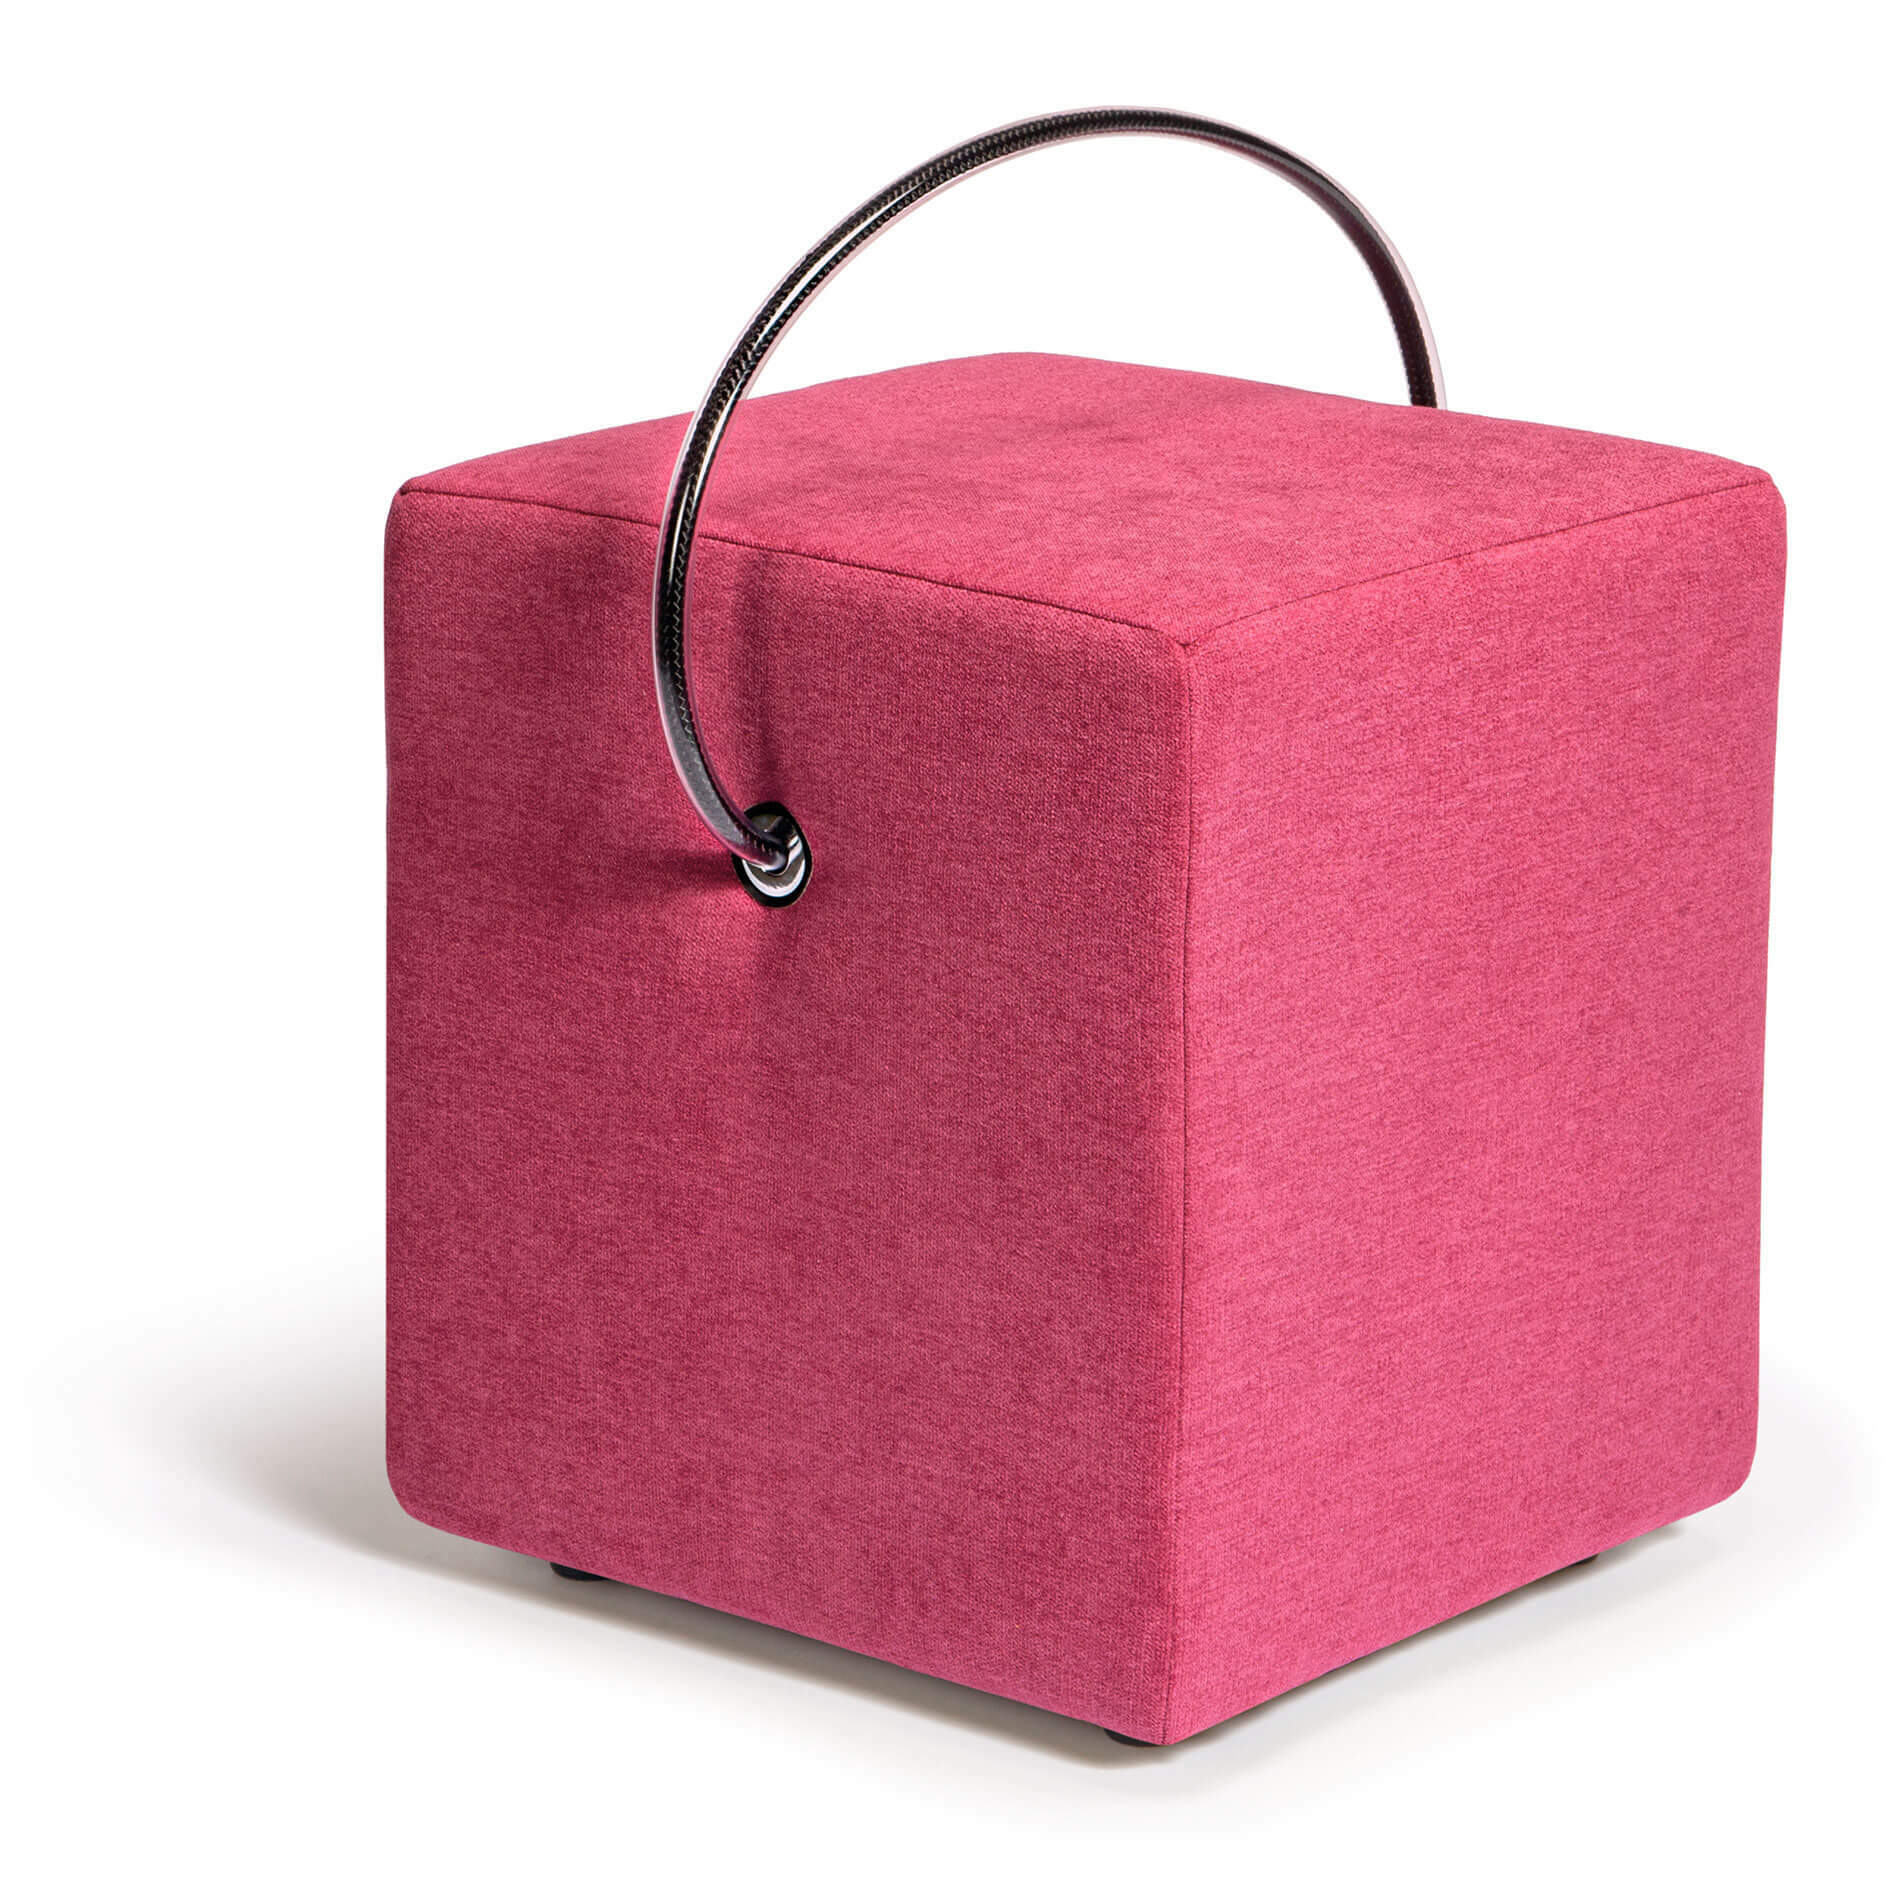 Rosafarbener Design-Hocker: Romantische Akzente mit unserem gepolsterten und leicht-tragbaren rosafarbenen Hocker. Jetzt bestellen und verzaubern lassen!